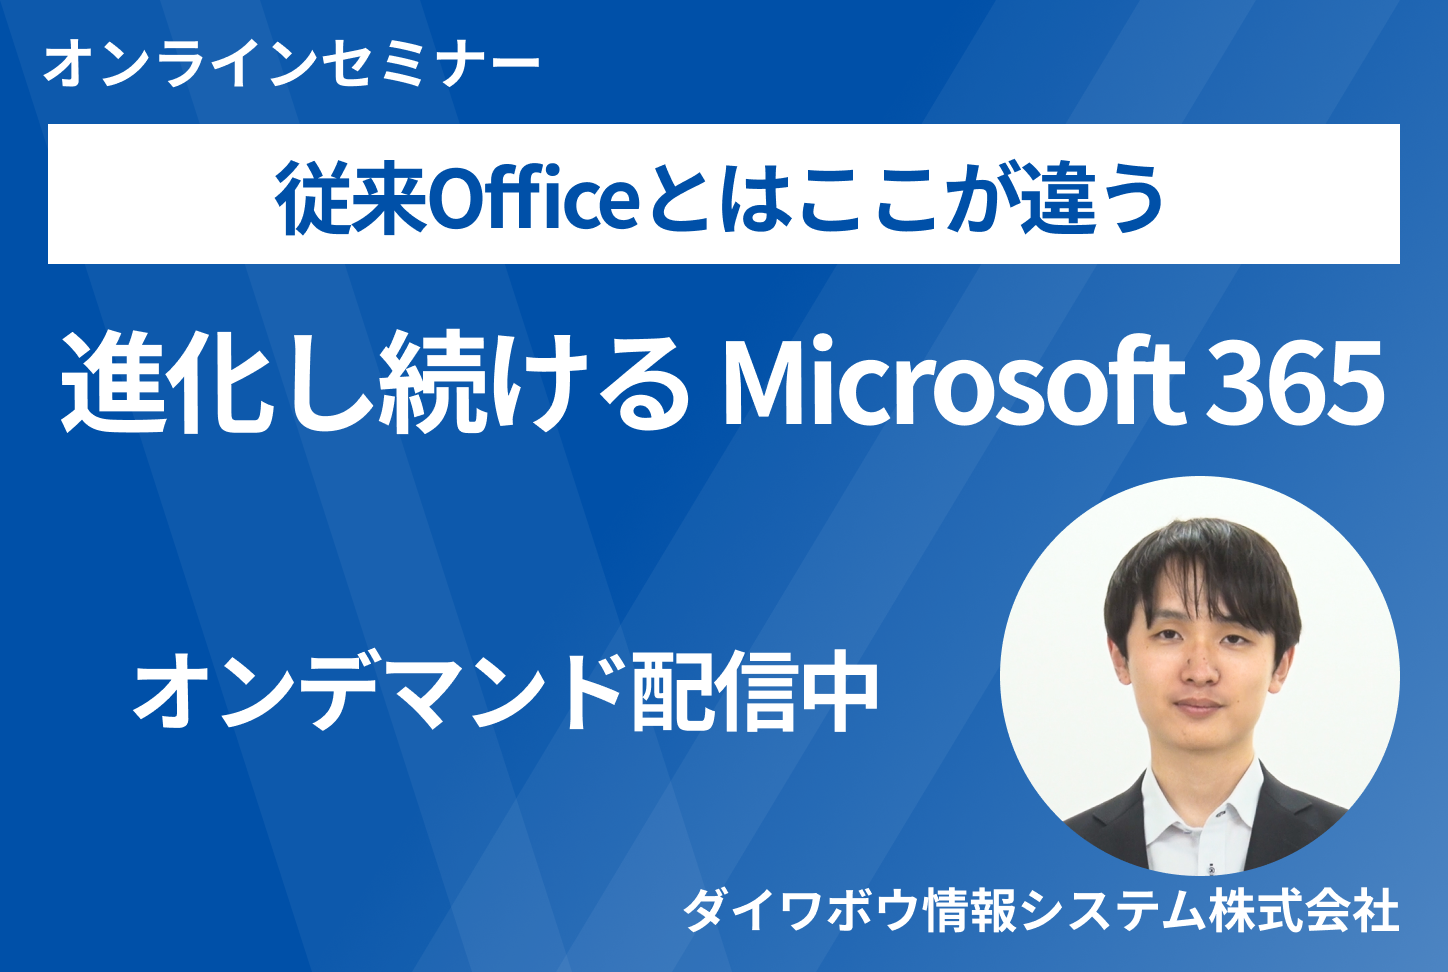 従来Officeとはここが違う進化し続けるMicrosoft 365